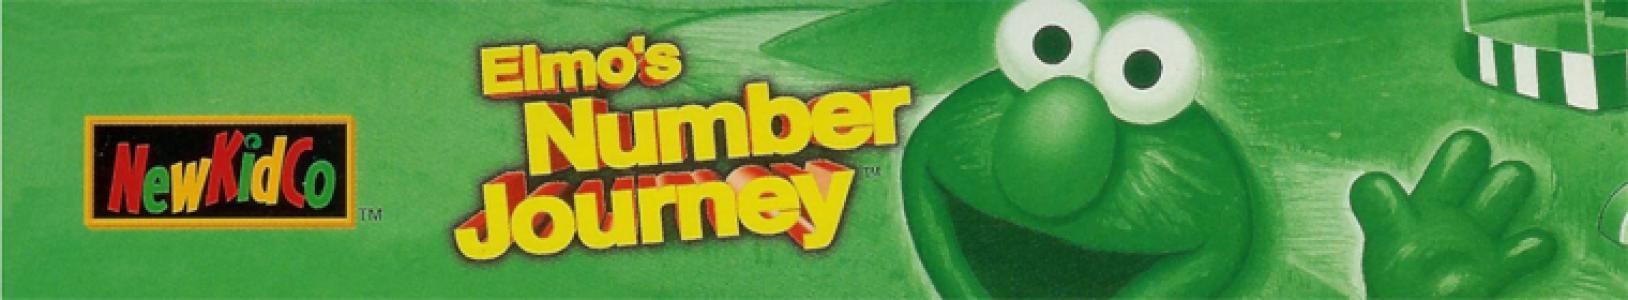 Sesame Street: Elmo's Number Journey banner